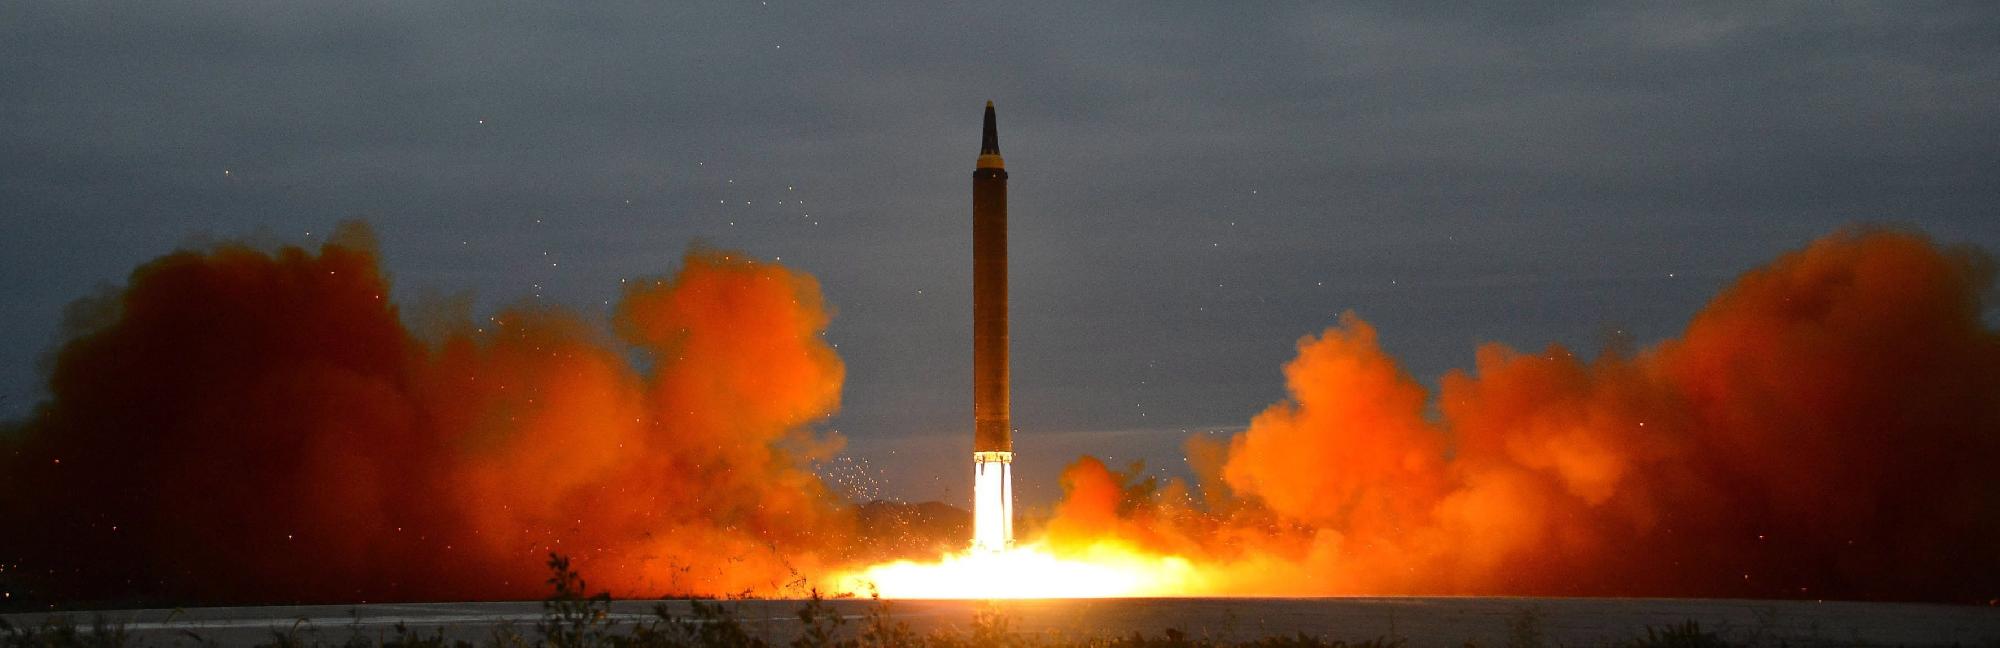 Észak-Korea az atomfegyver-fejlesztések felújításával fenyegetőzik